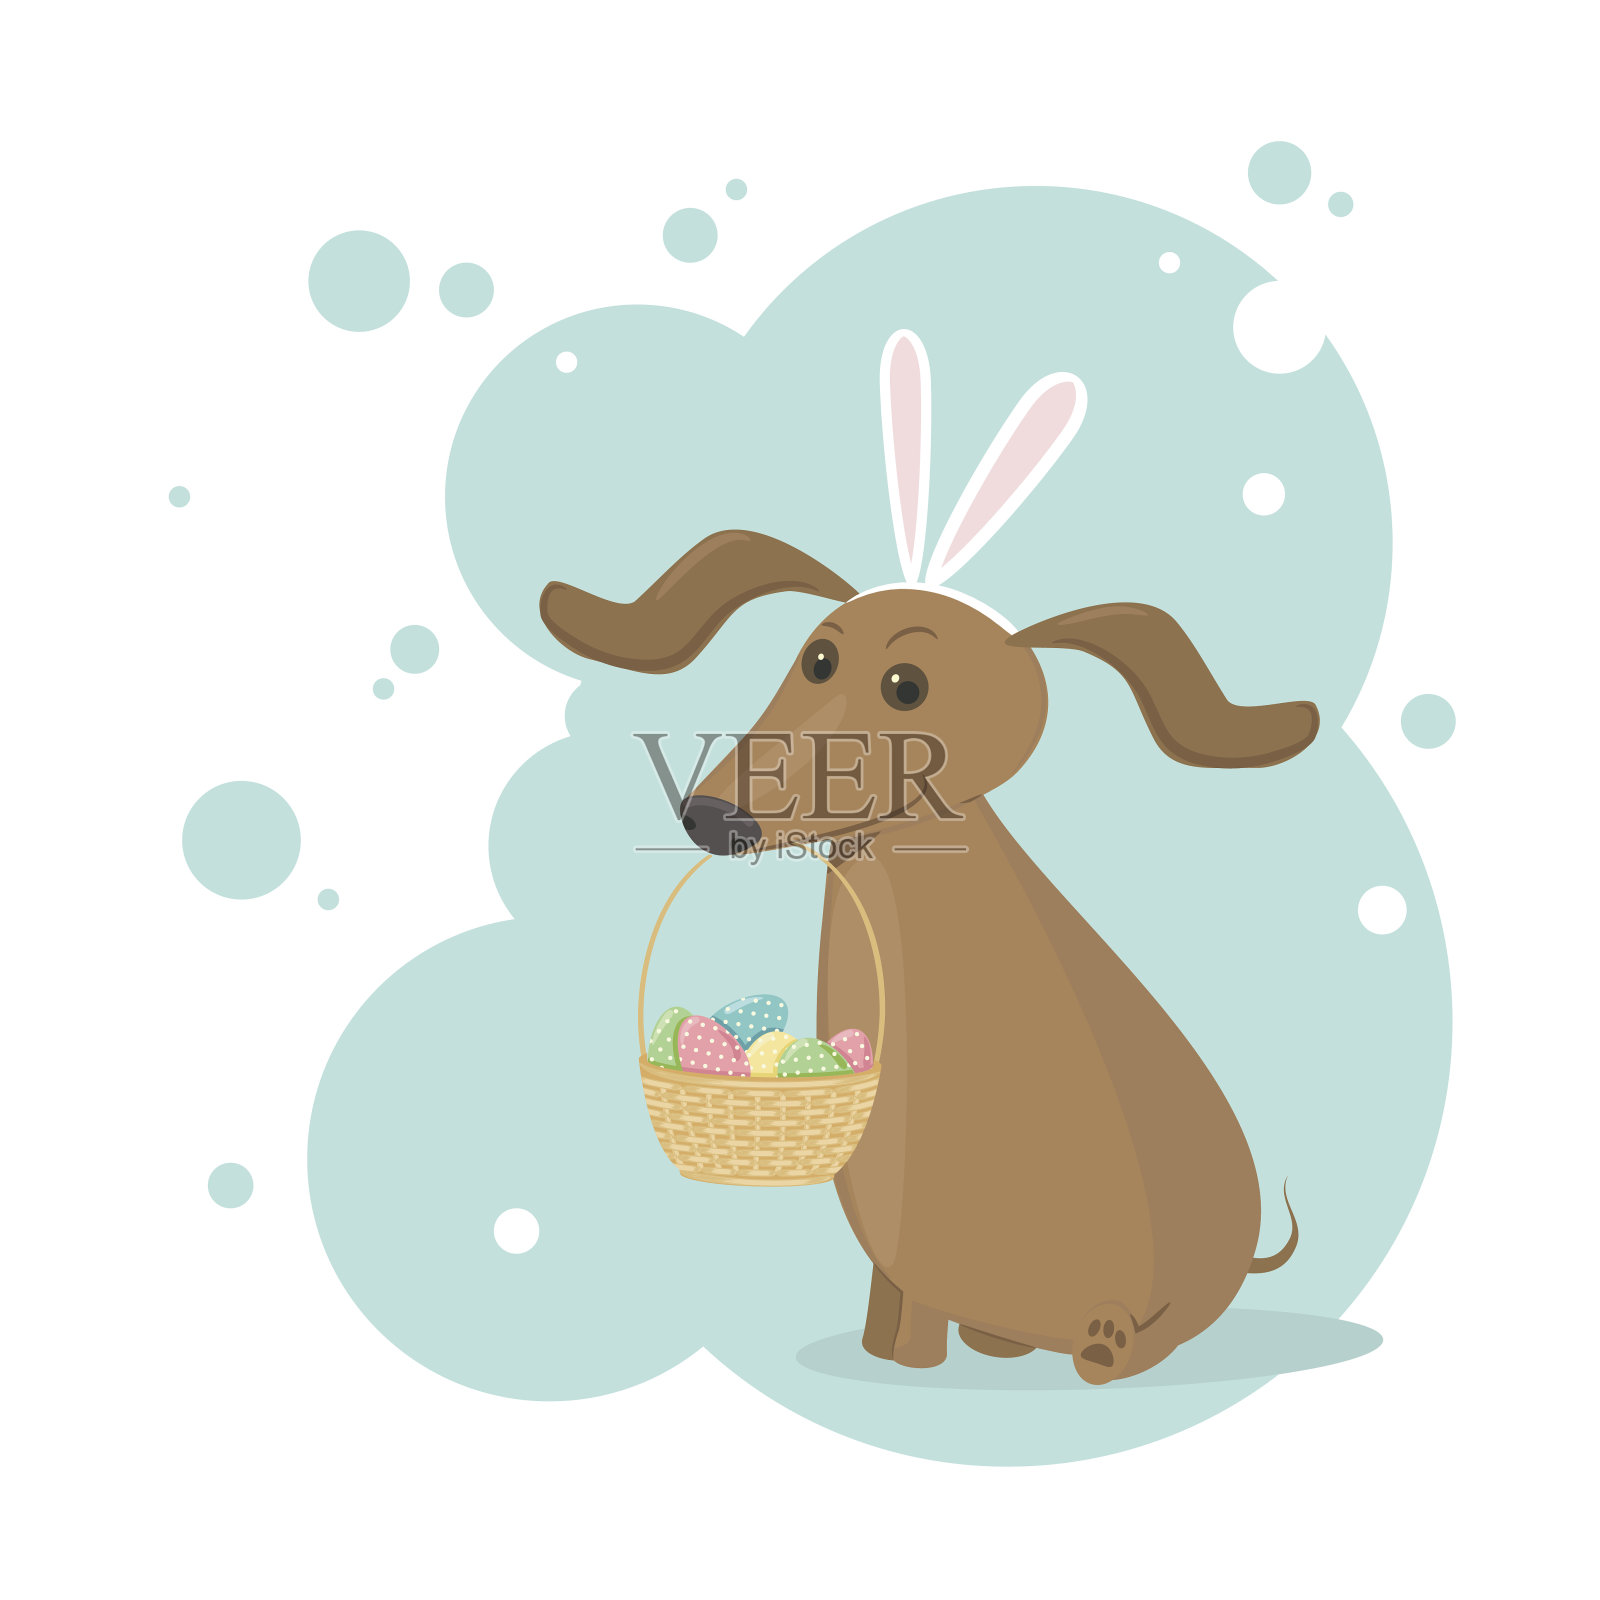 复活节兔子装腊肠狗插画图片素材